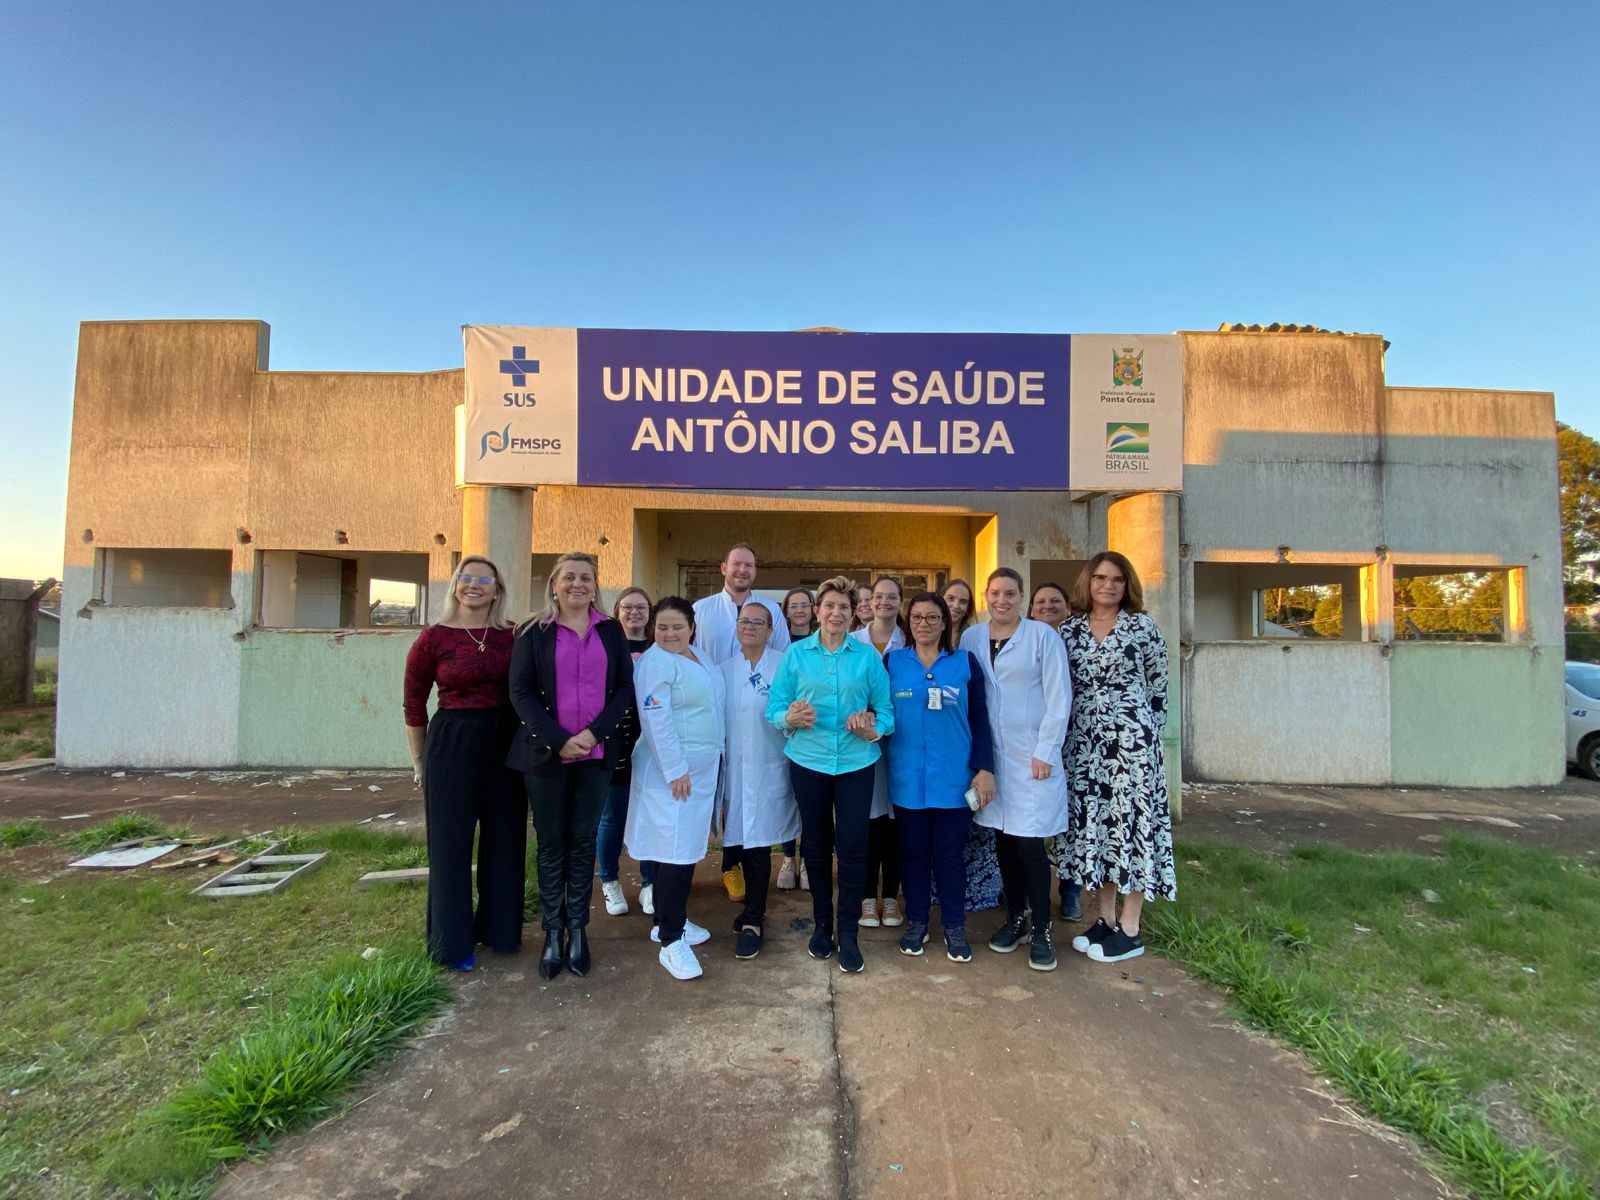 Prefeita Elizabeth anuncia o início das obras da unidade de saúde Antônio Saliba